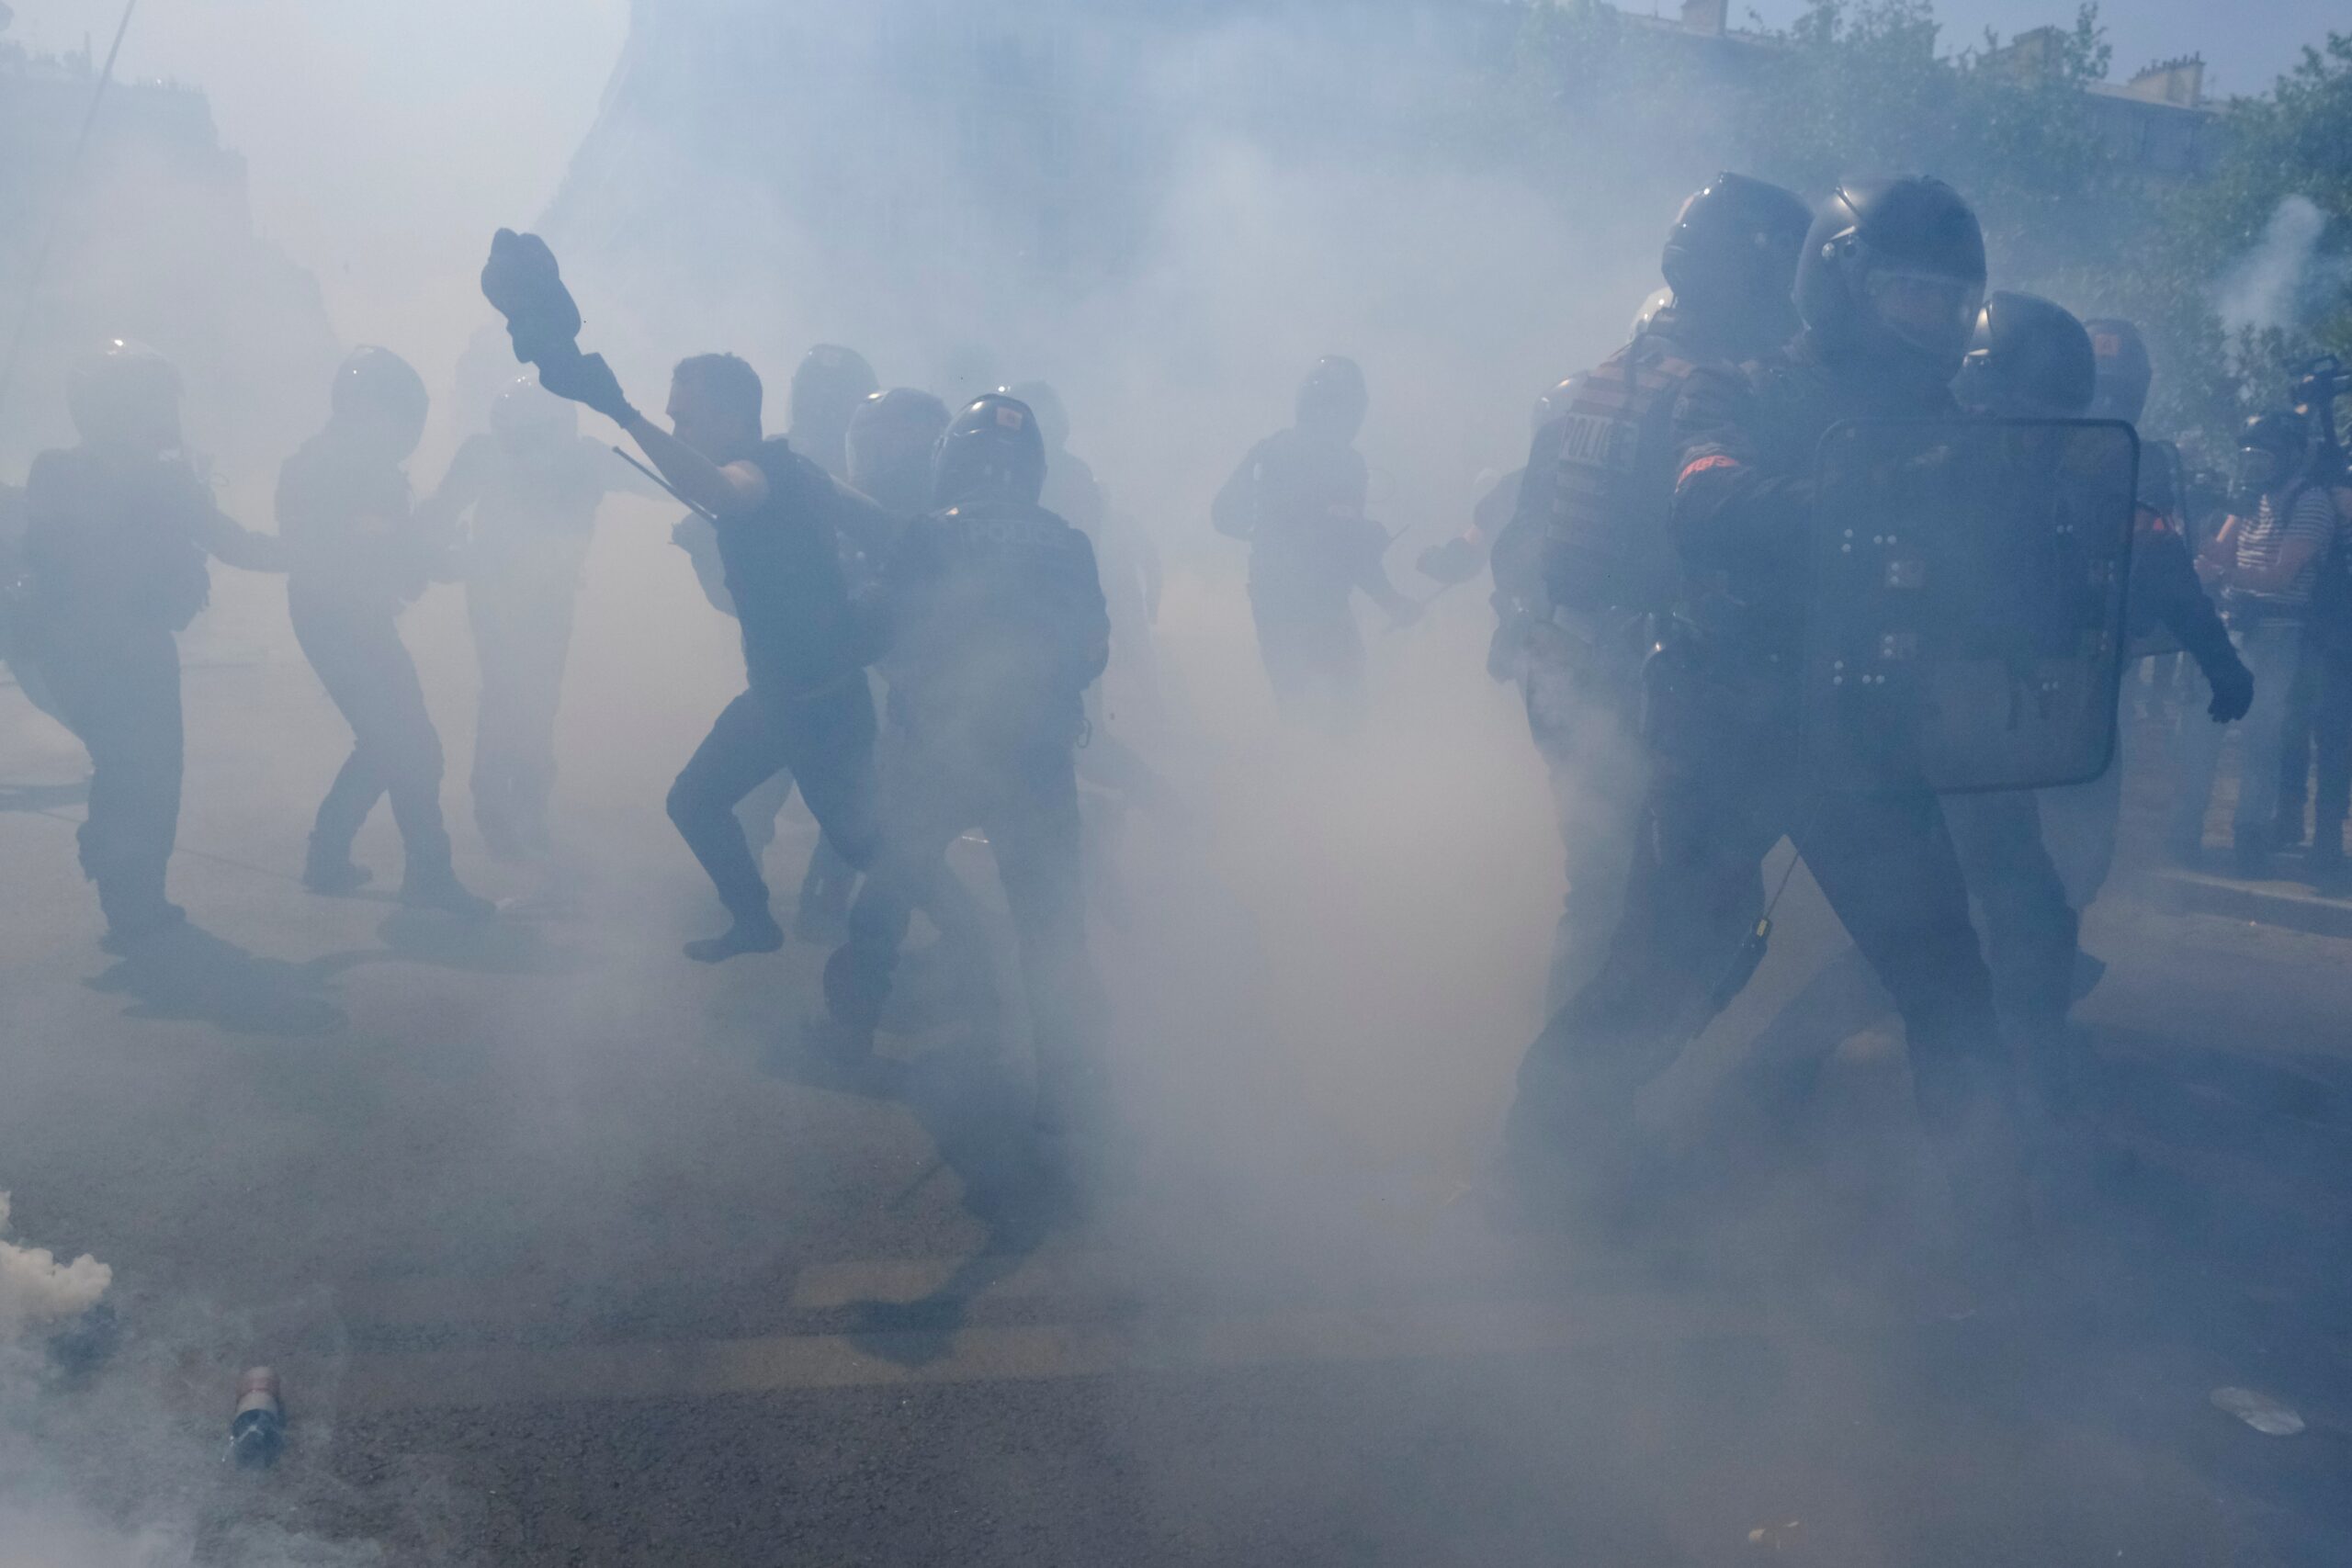 Frankreich: Demonstrant im Koma, 200 Verletzte durch Polizei